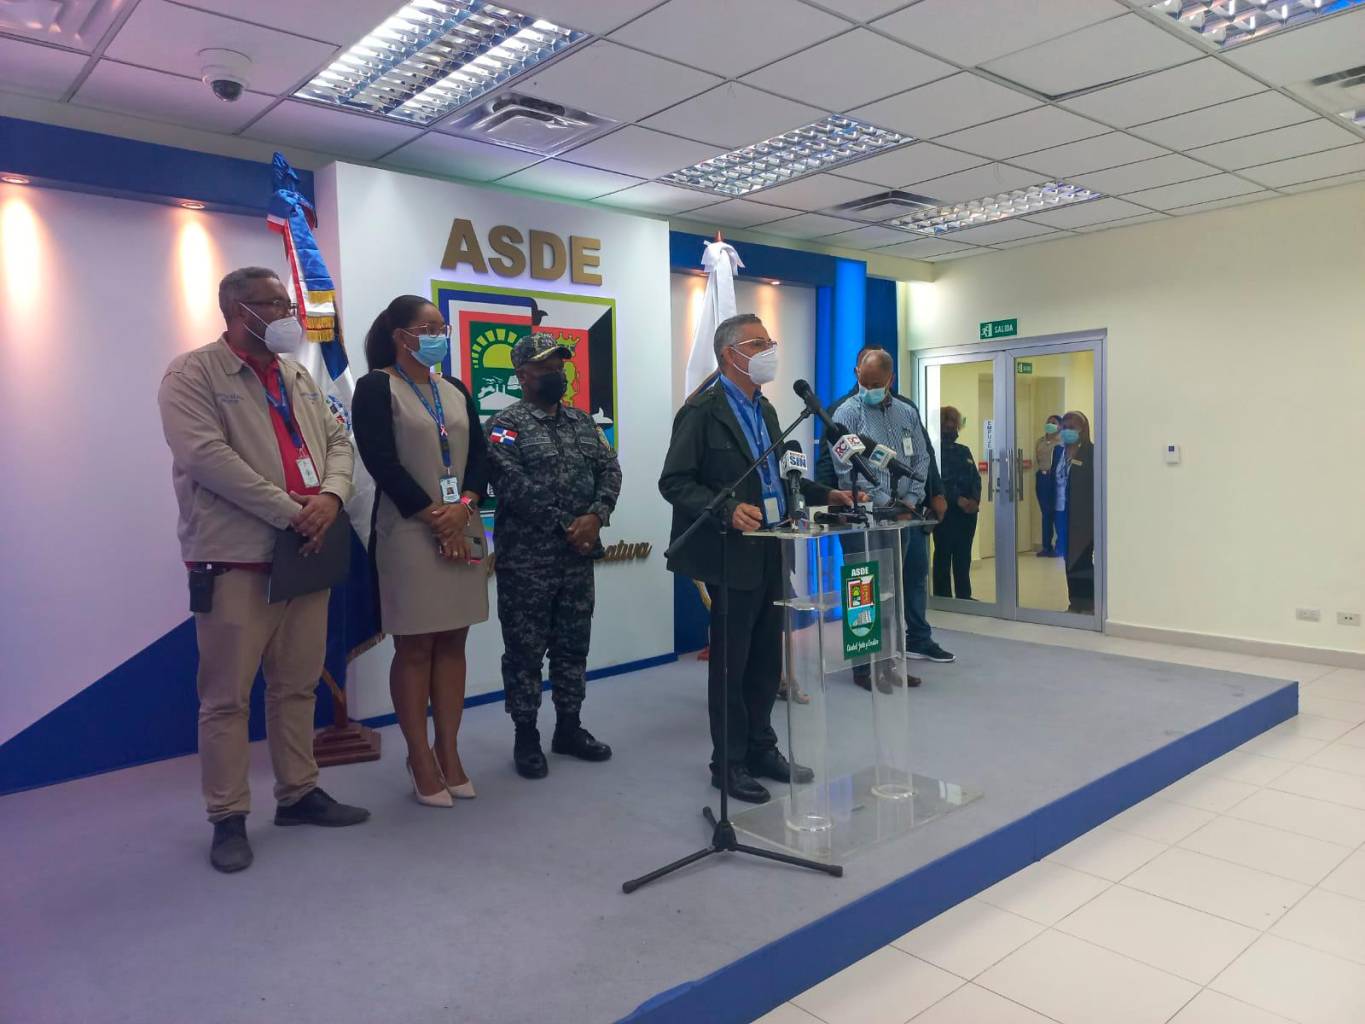 Santo Domingo Mayor Este condemns the ‘attack’ against city council teams